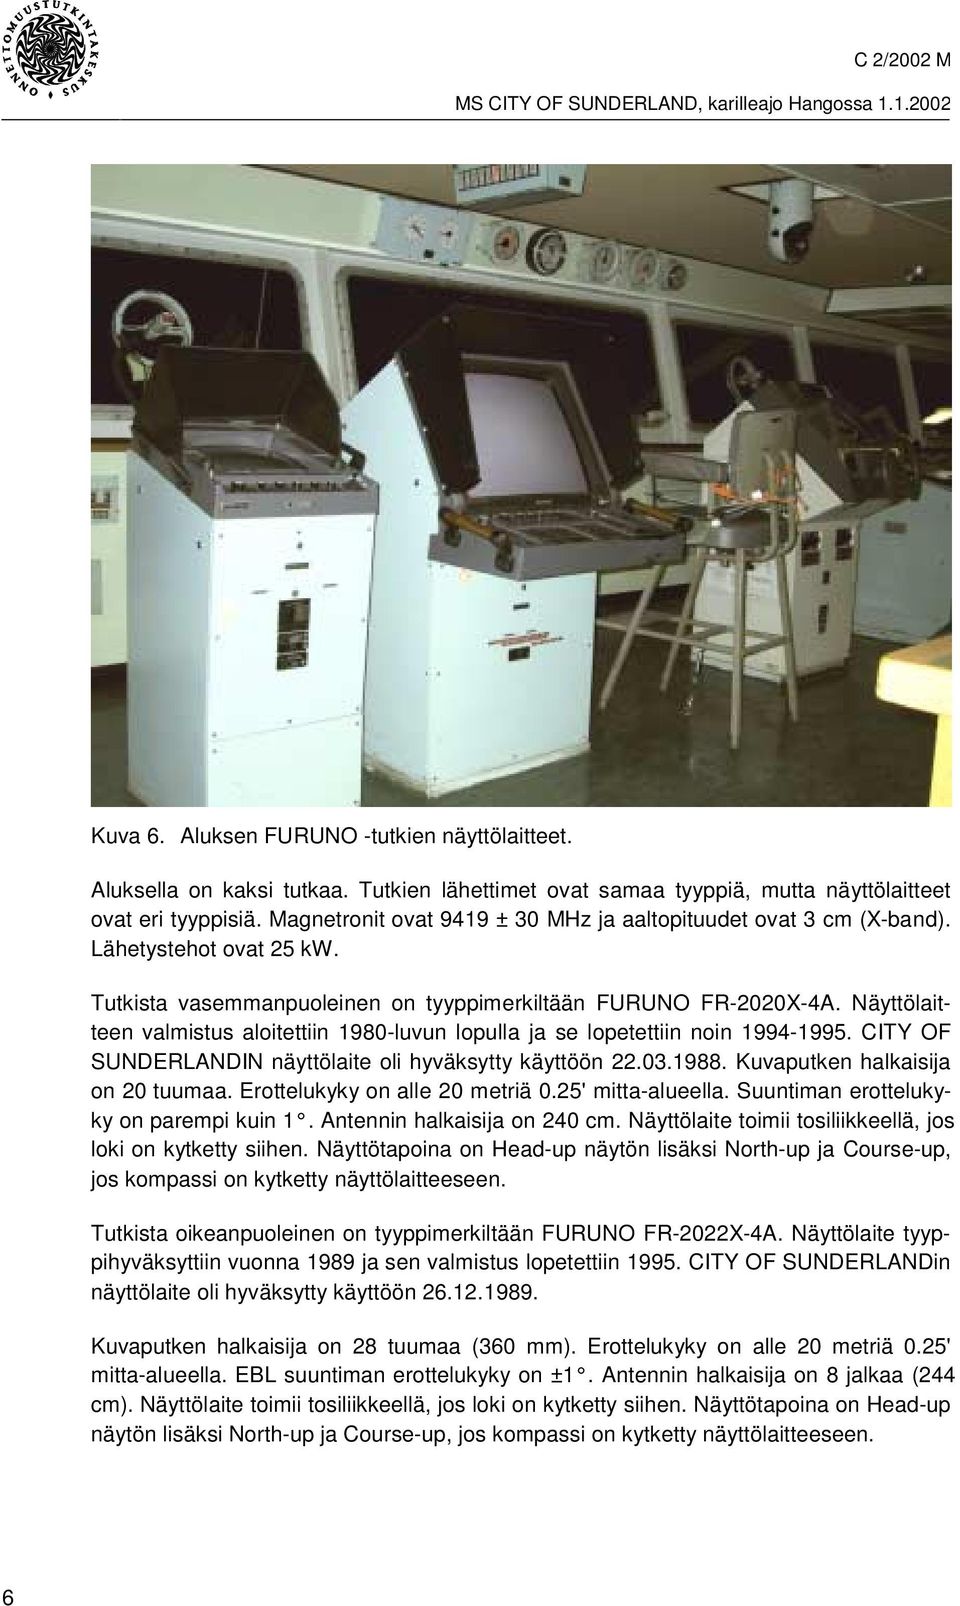 Näyttölaitteen valmistus aloitettiin 1980-luvun lopulla ja se lopetettiin noin 1994-1995. CITY OF SUNDERLANDIN näyttölaite oli hyväksytty käyttöön 22.03.1988. Kuvaputken halkaisija on 20 tuumaa.